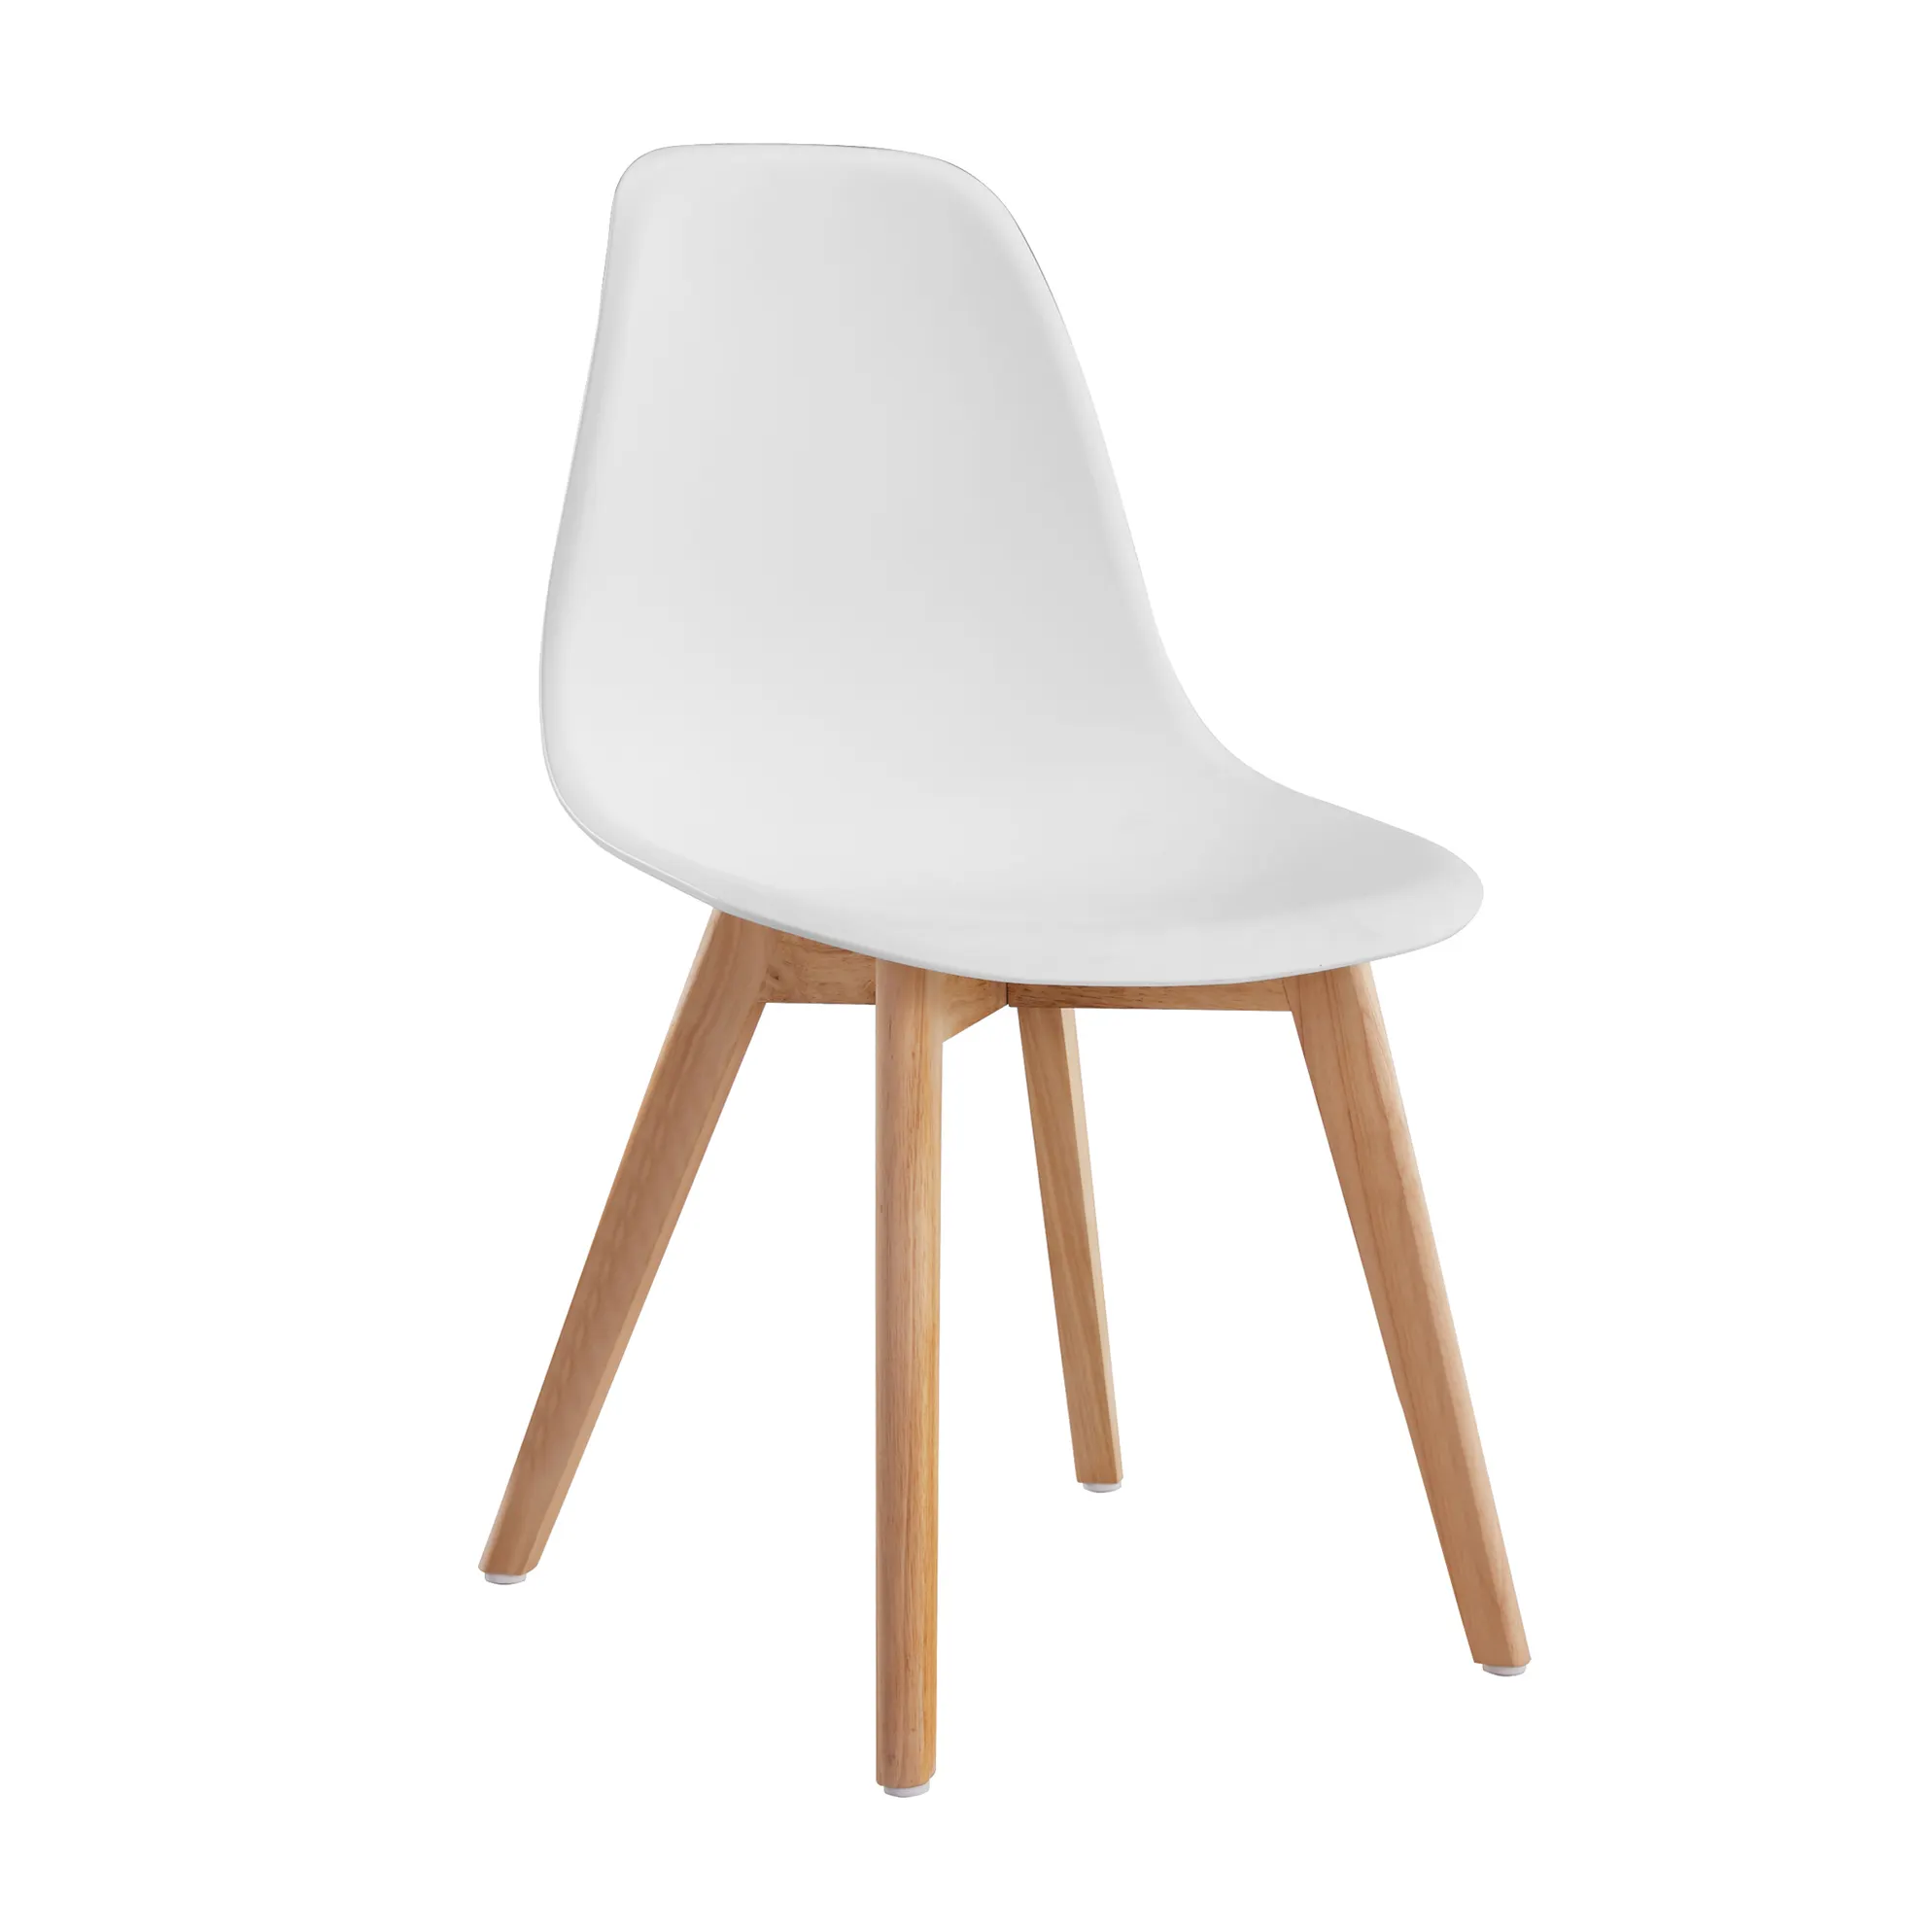 Chaises de cuisine en polypropylène plastique nordique avec pieds en bois pas cher meubles de maison modernes contemporain Silla Nordica 50 pièces